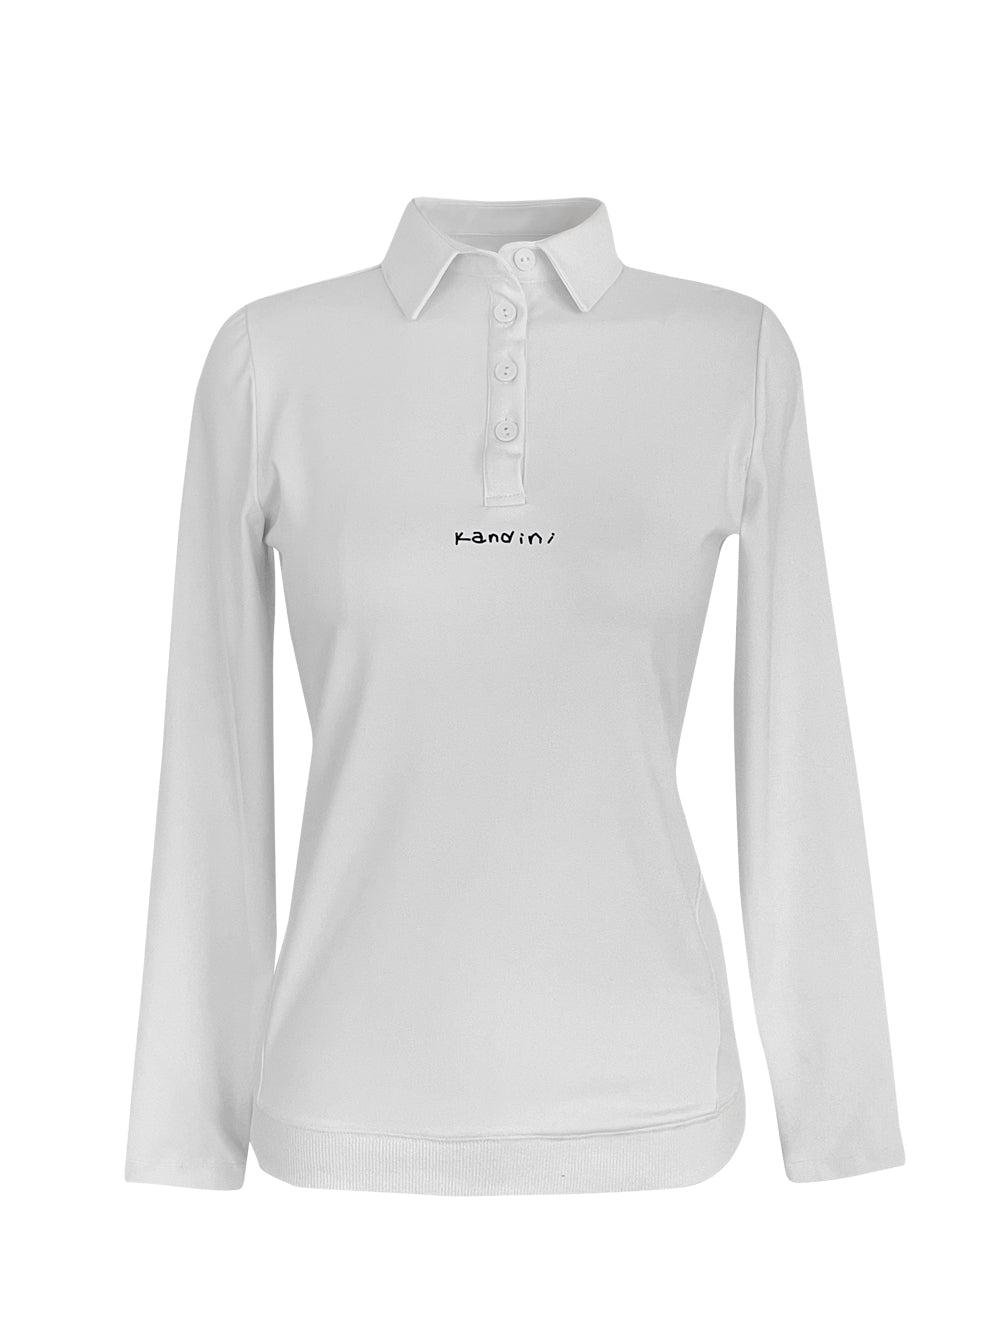 Essential active shirts-トップス,長袖シャツ-SOMUA CLUB-韓国ゴルフウェア